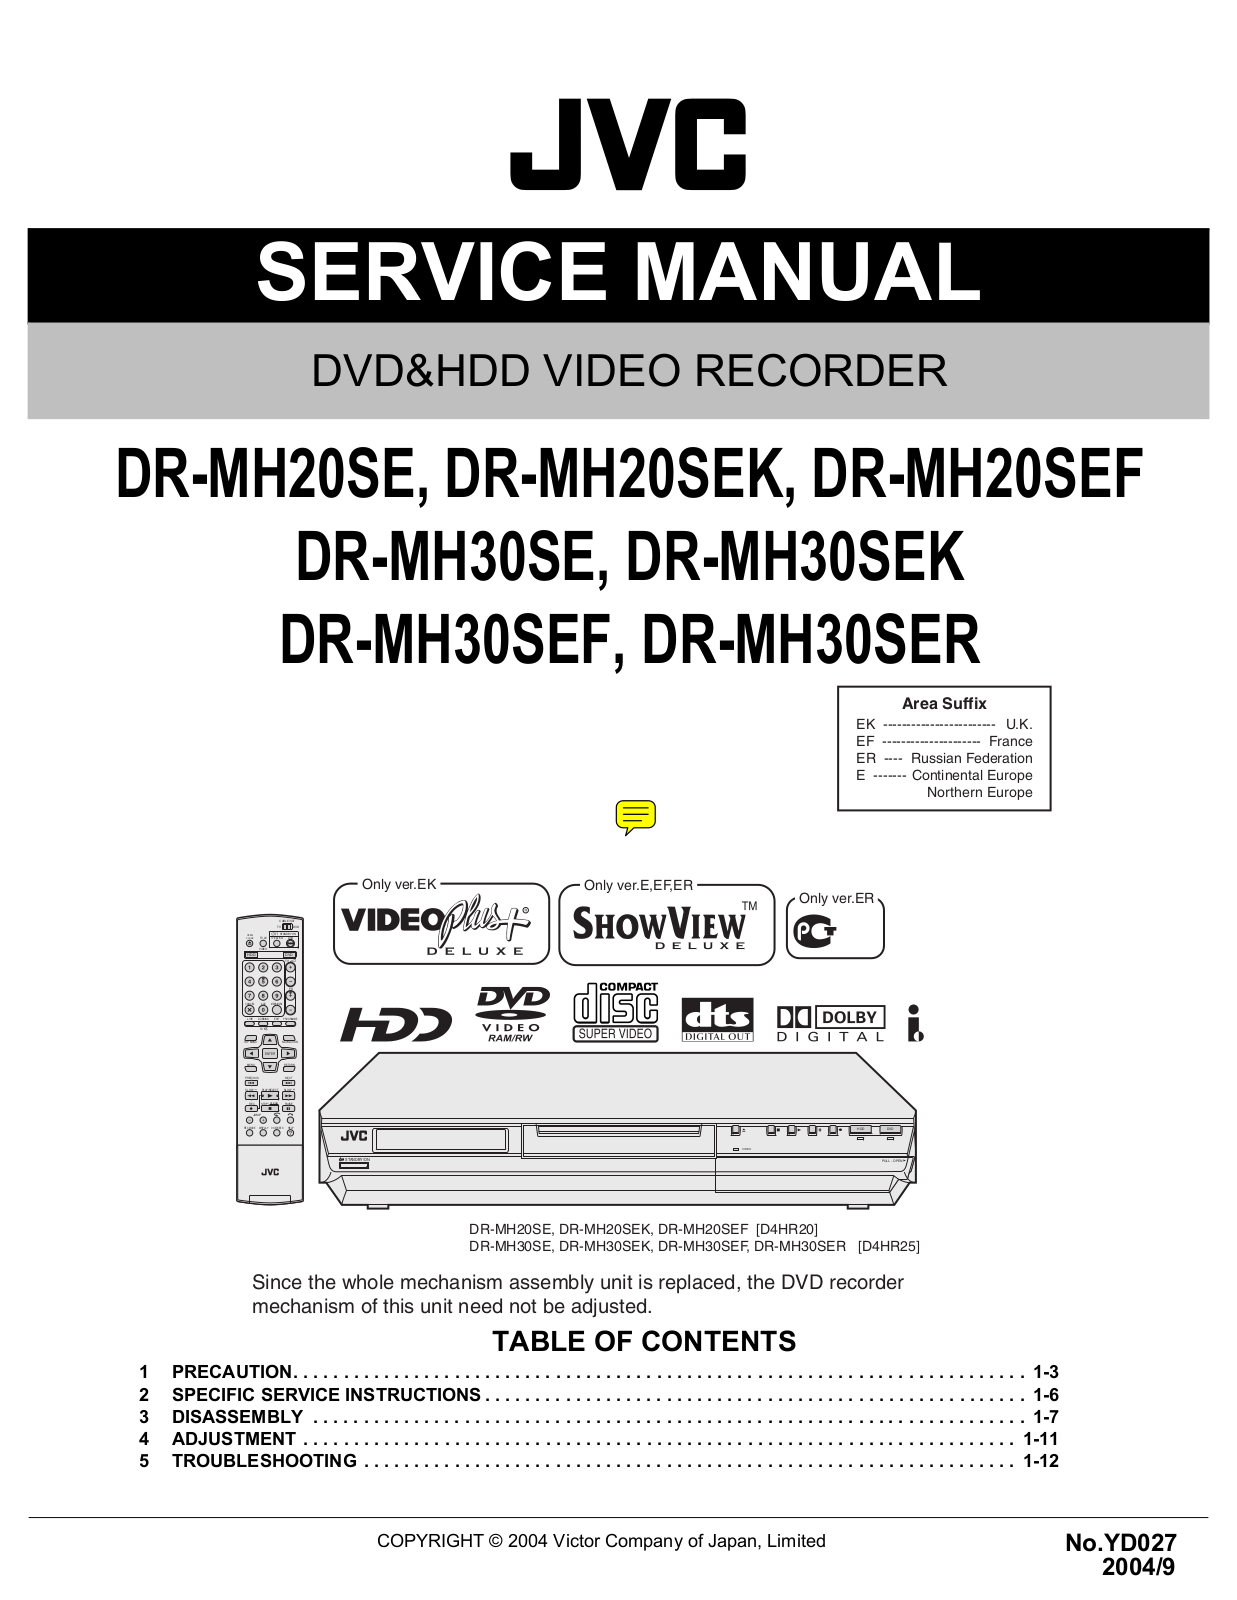 JVC DR-MH20SE, DR-MH20SEK, DR-MH20SEF, DR-MH30SE, DR-MH30SEK Diagram